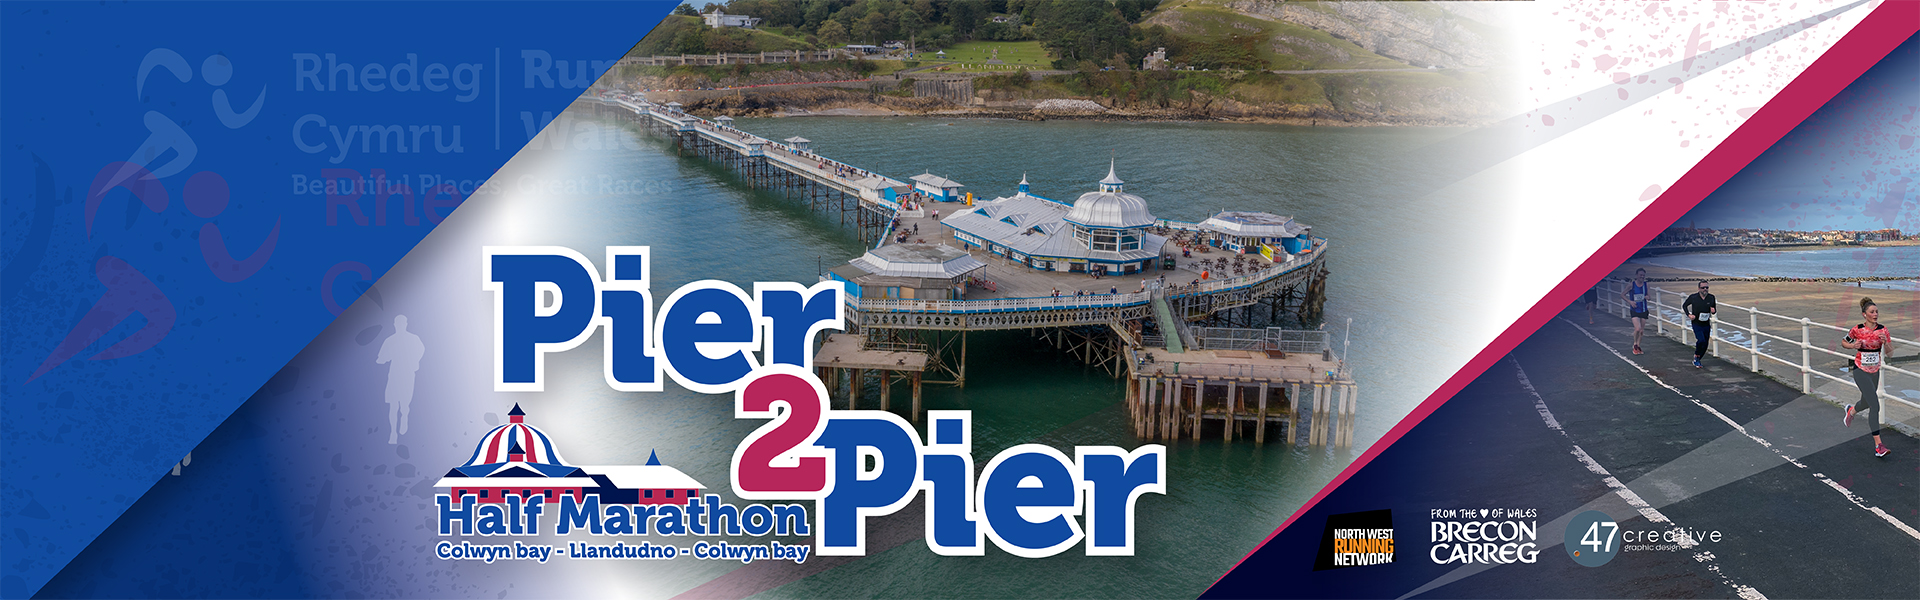 Pier2Pier Half Marathon